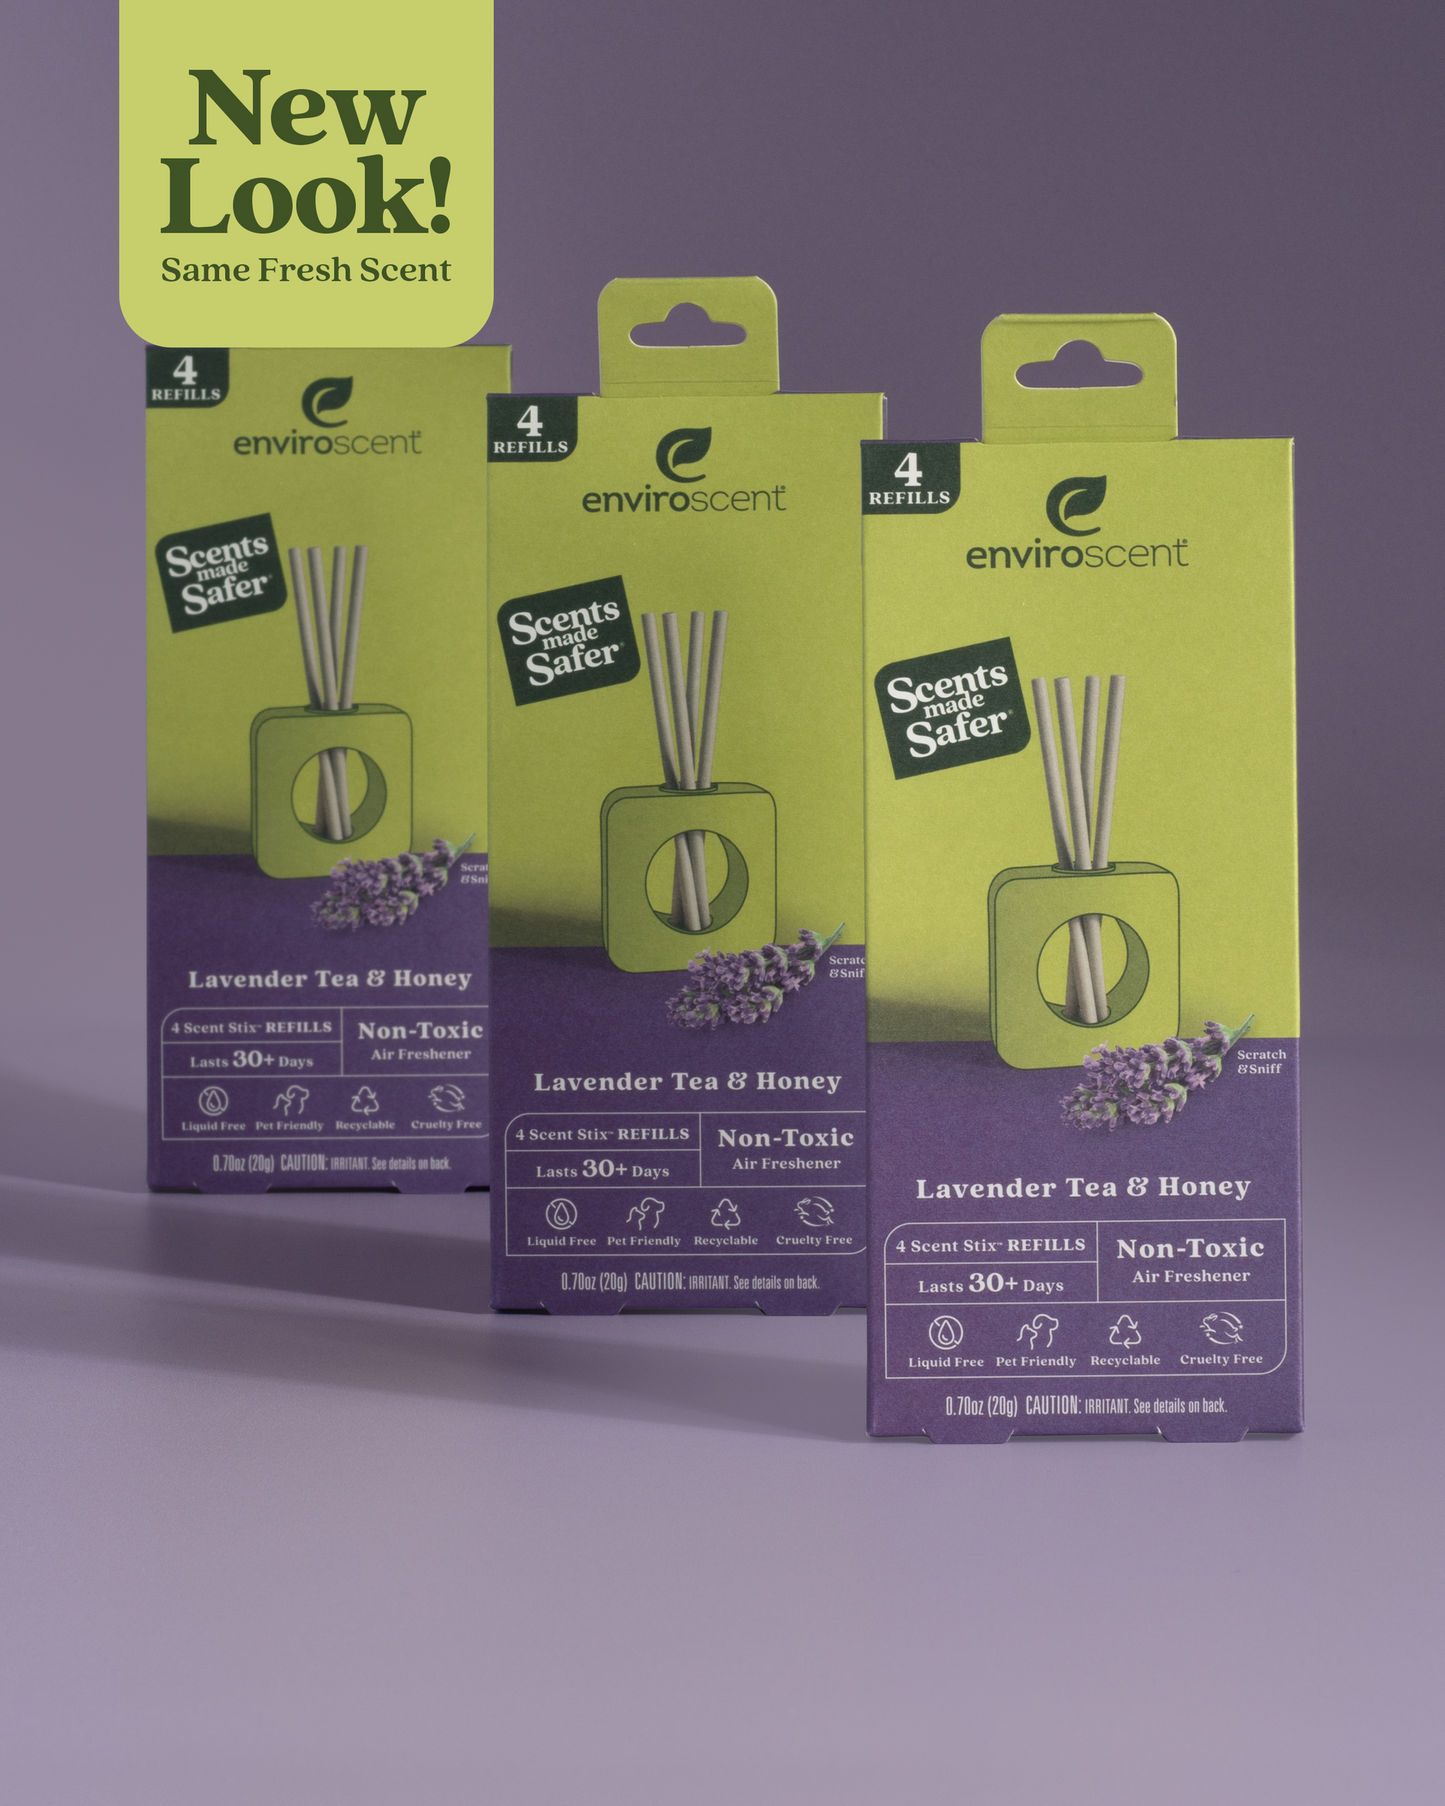 Lavender Tea & Honey Scent Stix Bundle in packaging